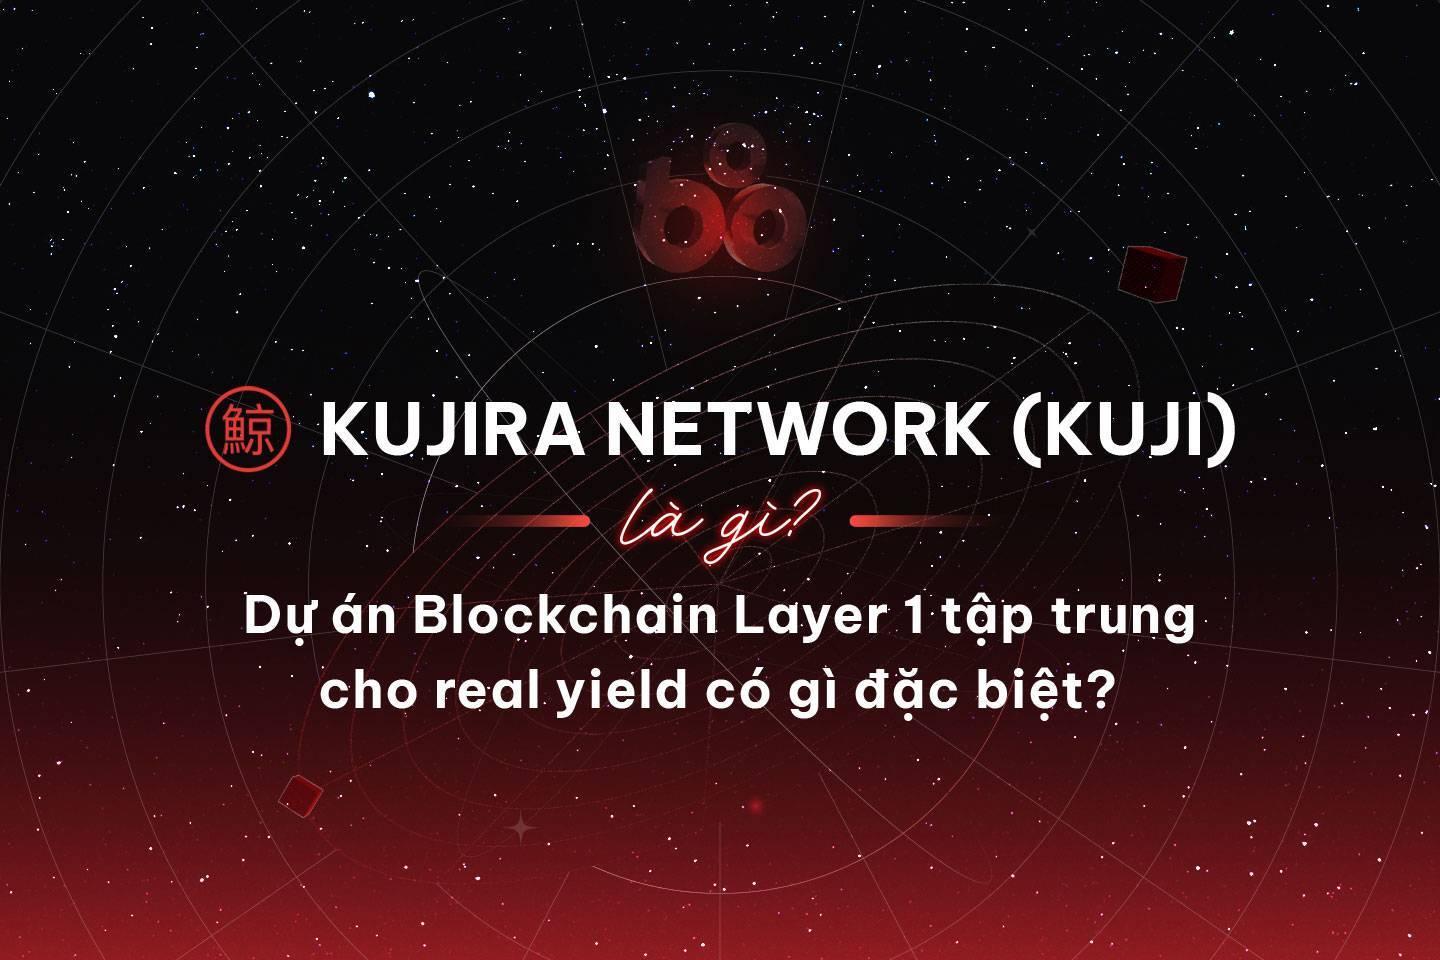 kujira-network-kuji-la-gi-du-an-blockchain-layer-1-tap-trung-cho-real-yield-co-gi-dac-biet